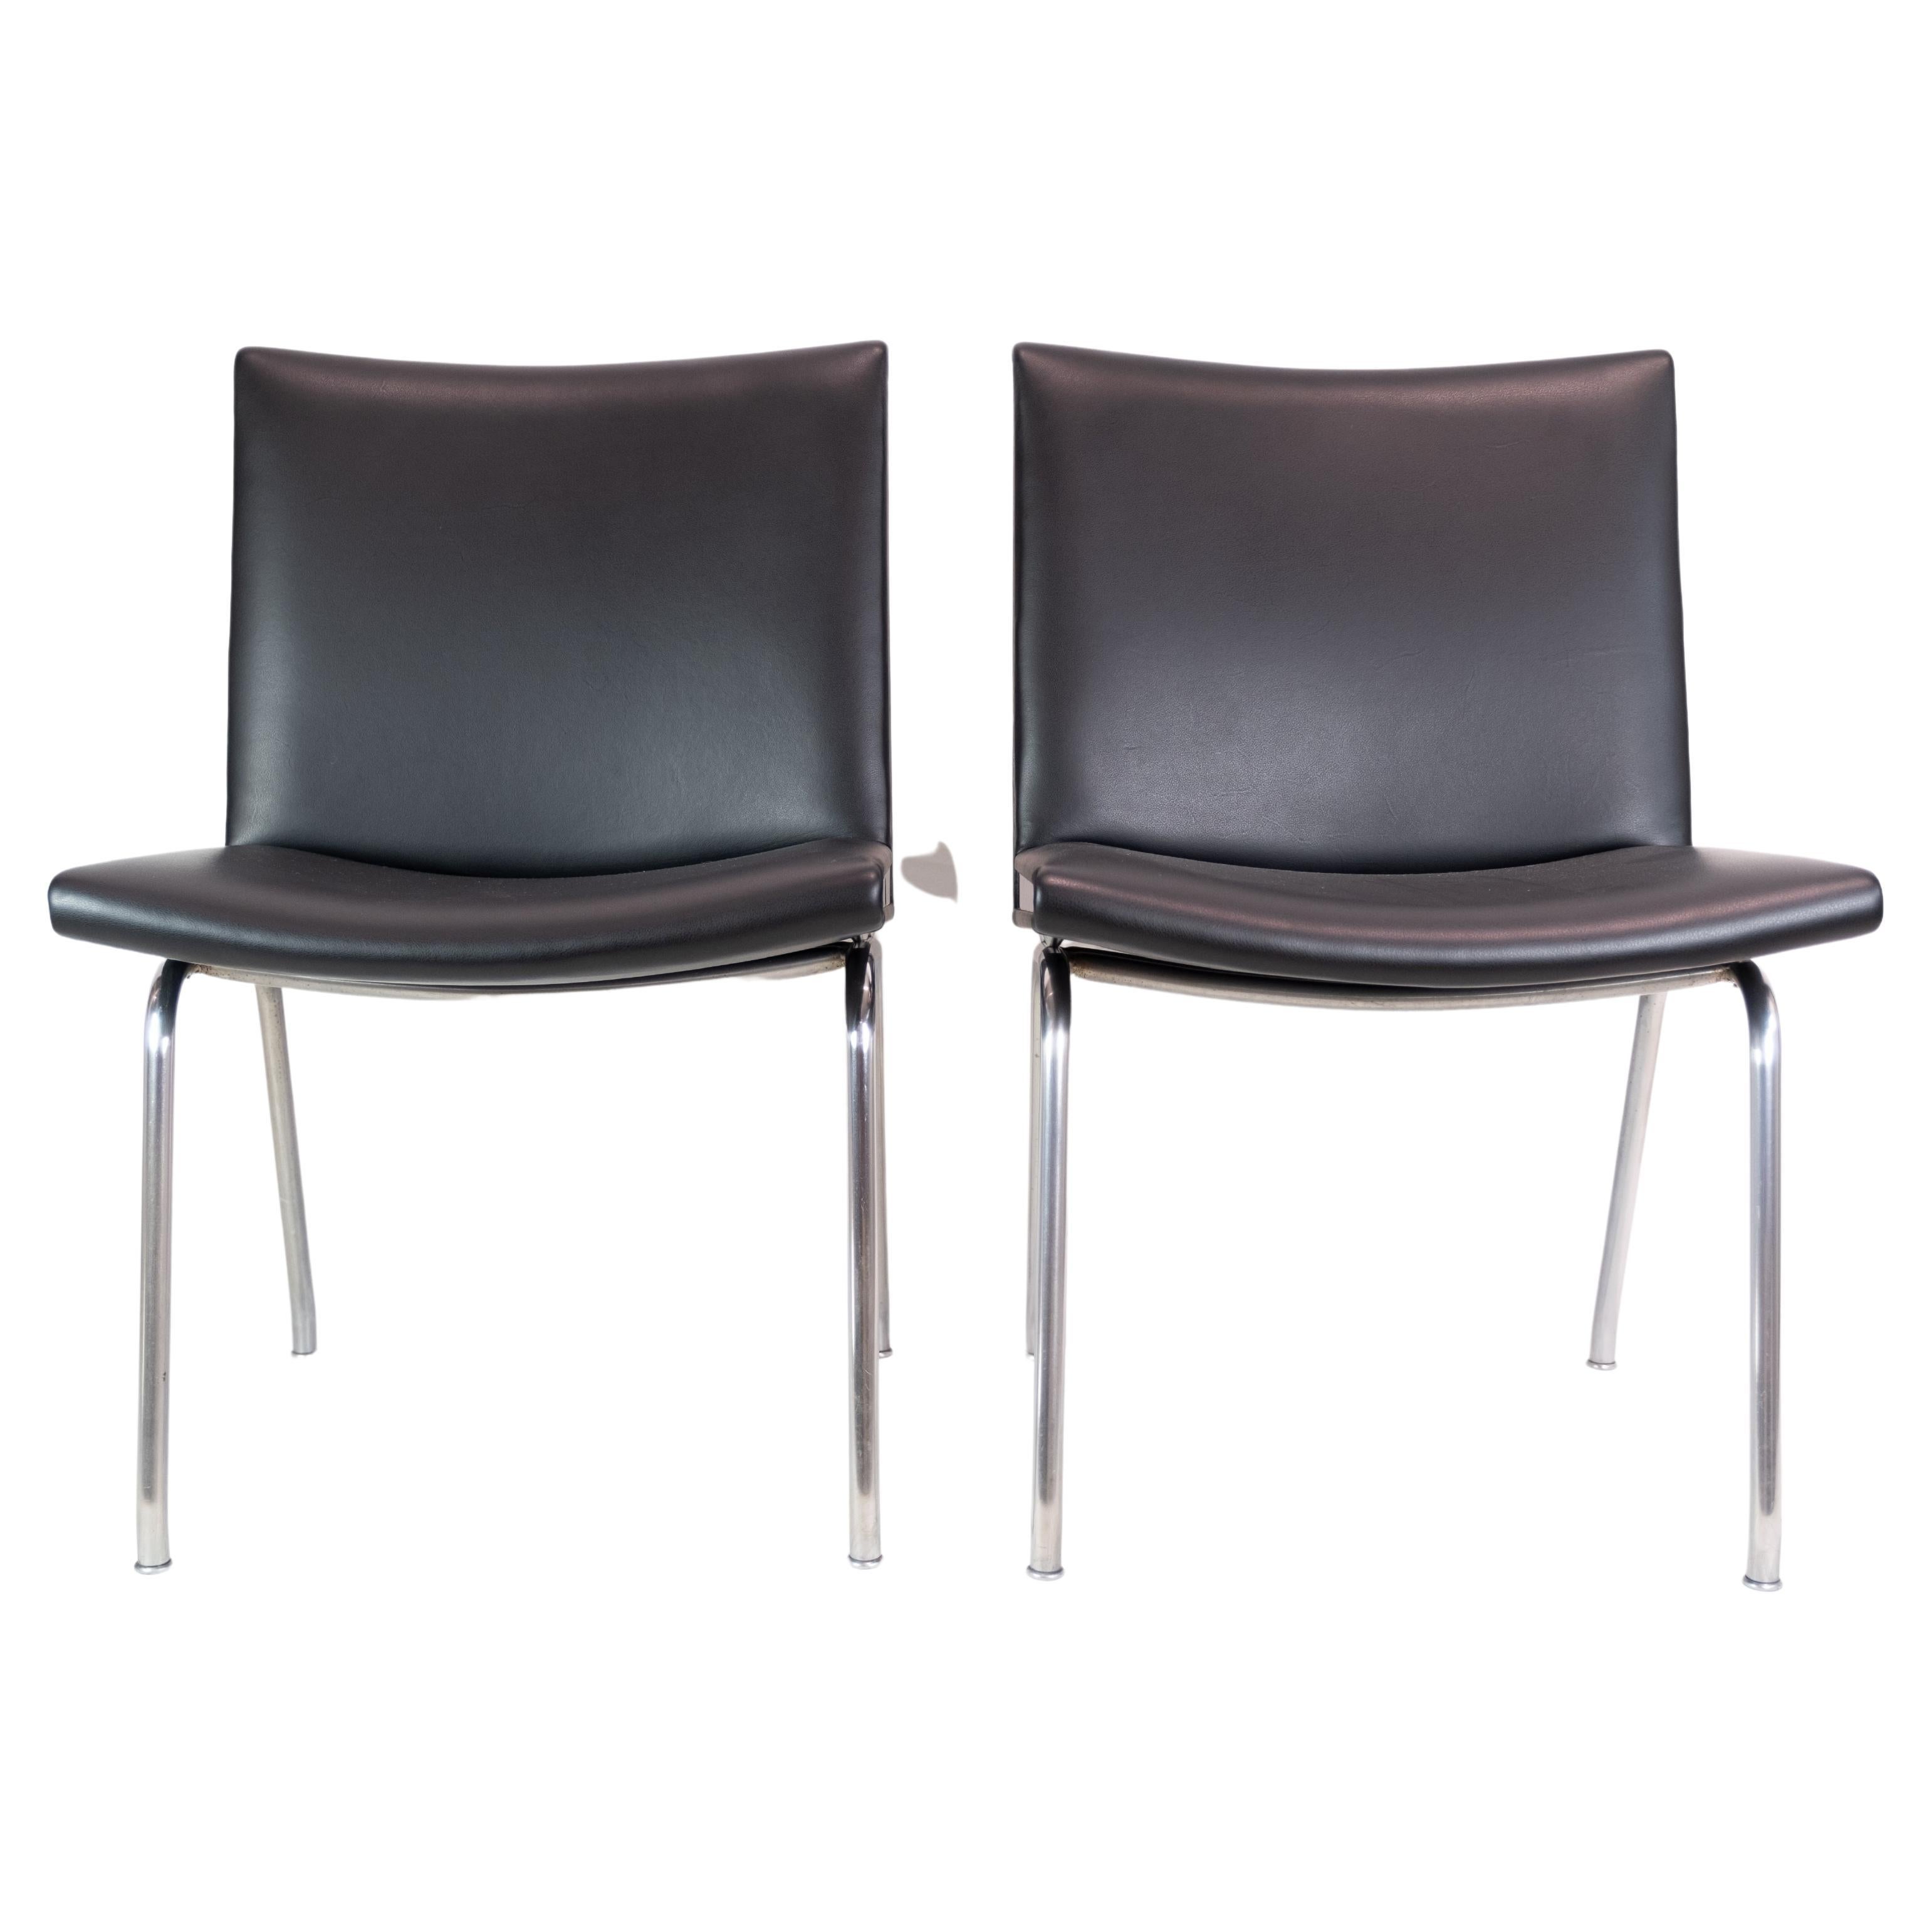 Kastrup Chair in Black Leather Model CH401 By Hans J. Wegner & Carl Hansen & Søn For Sale